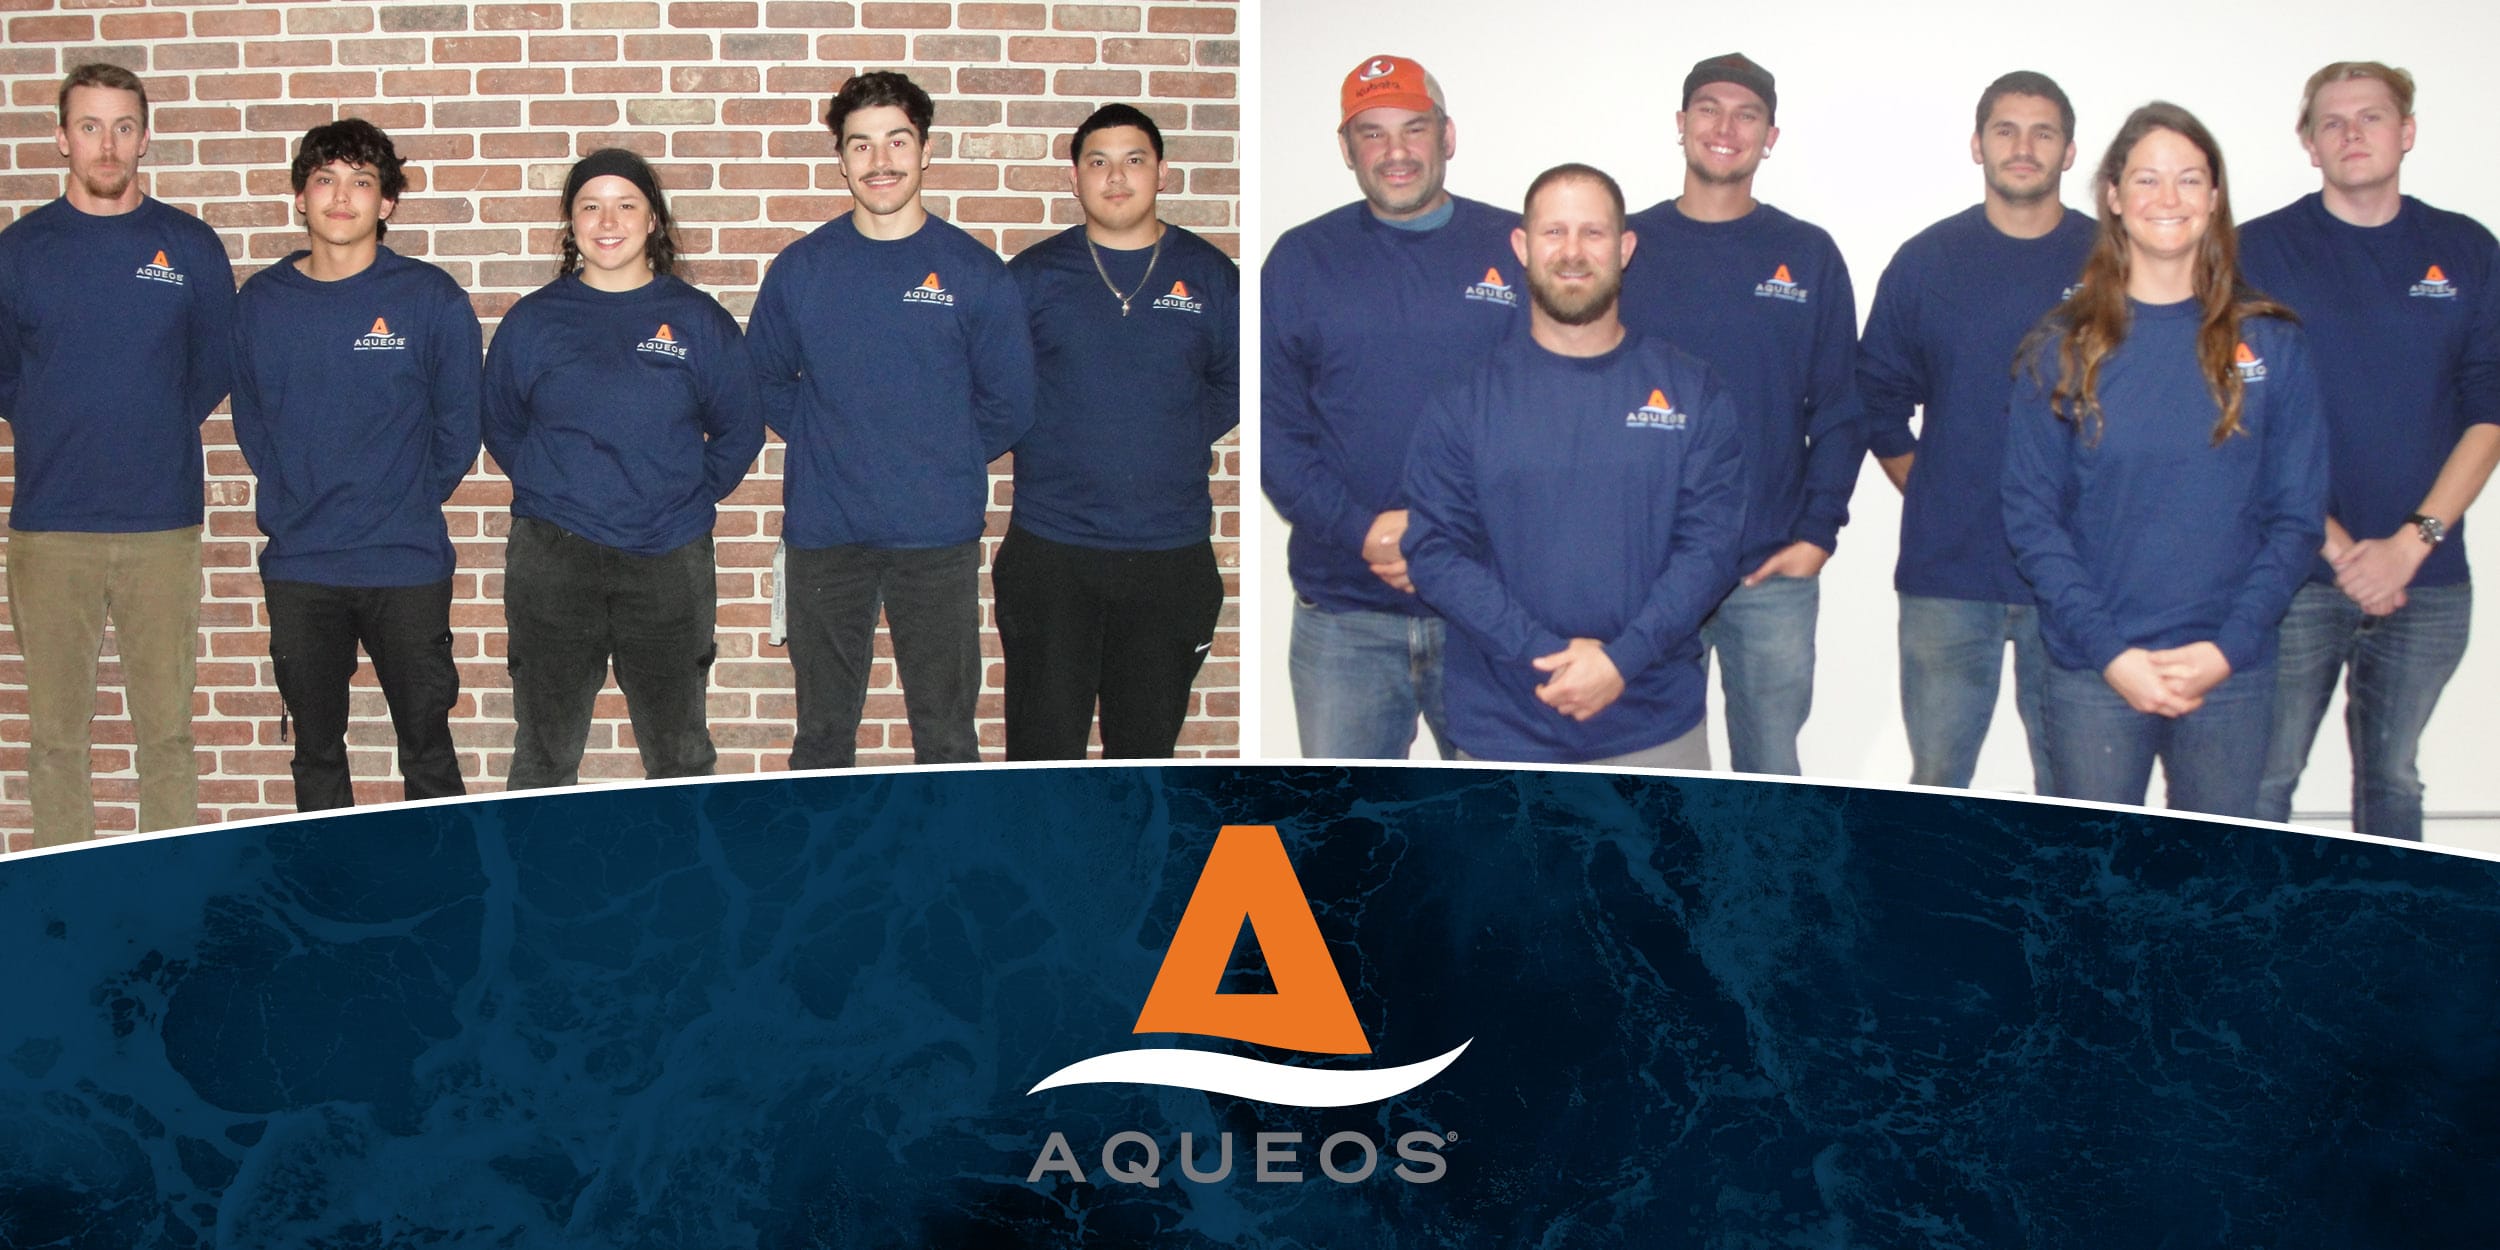 Aqueos, Aqueos Corporation, Advanced Offshore Medical Training, Offshore Medical Training